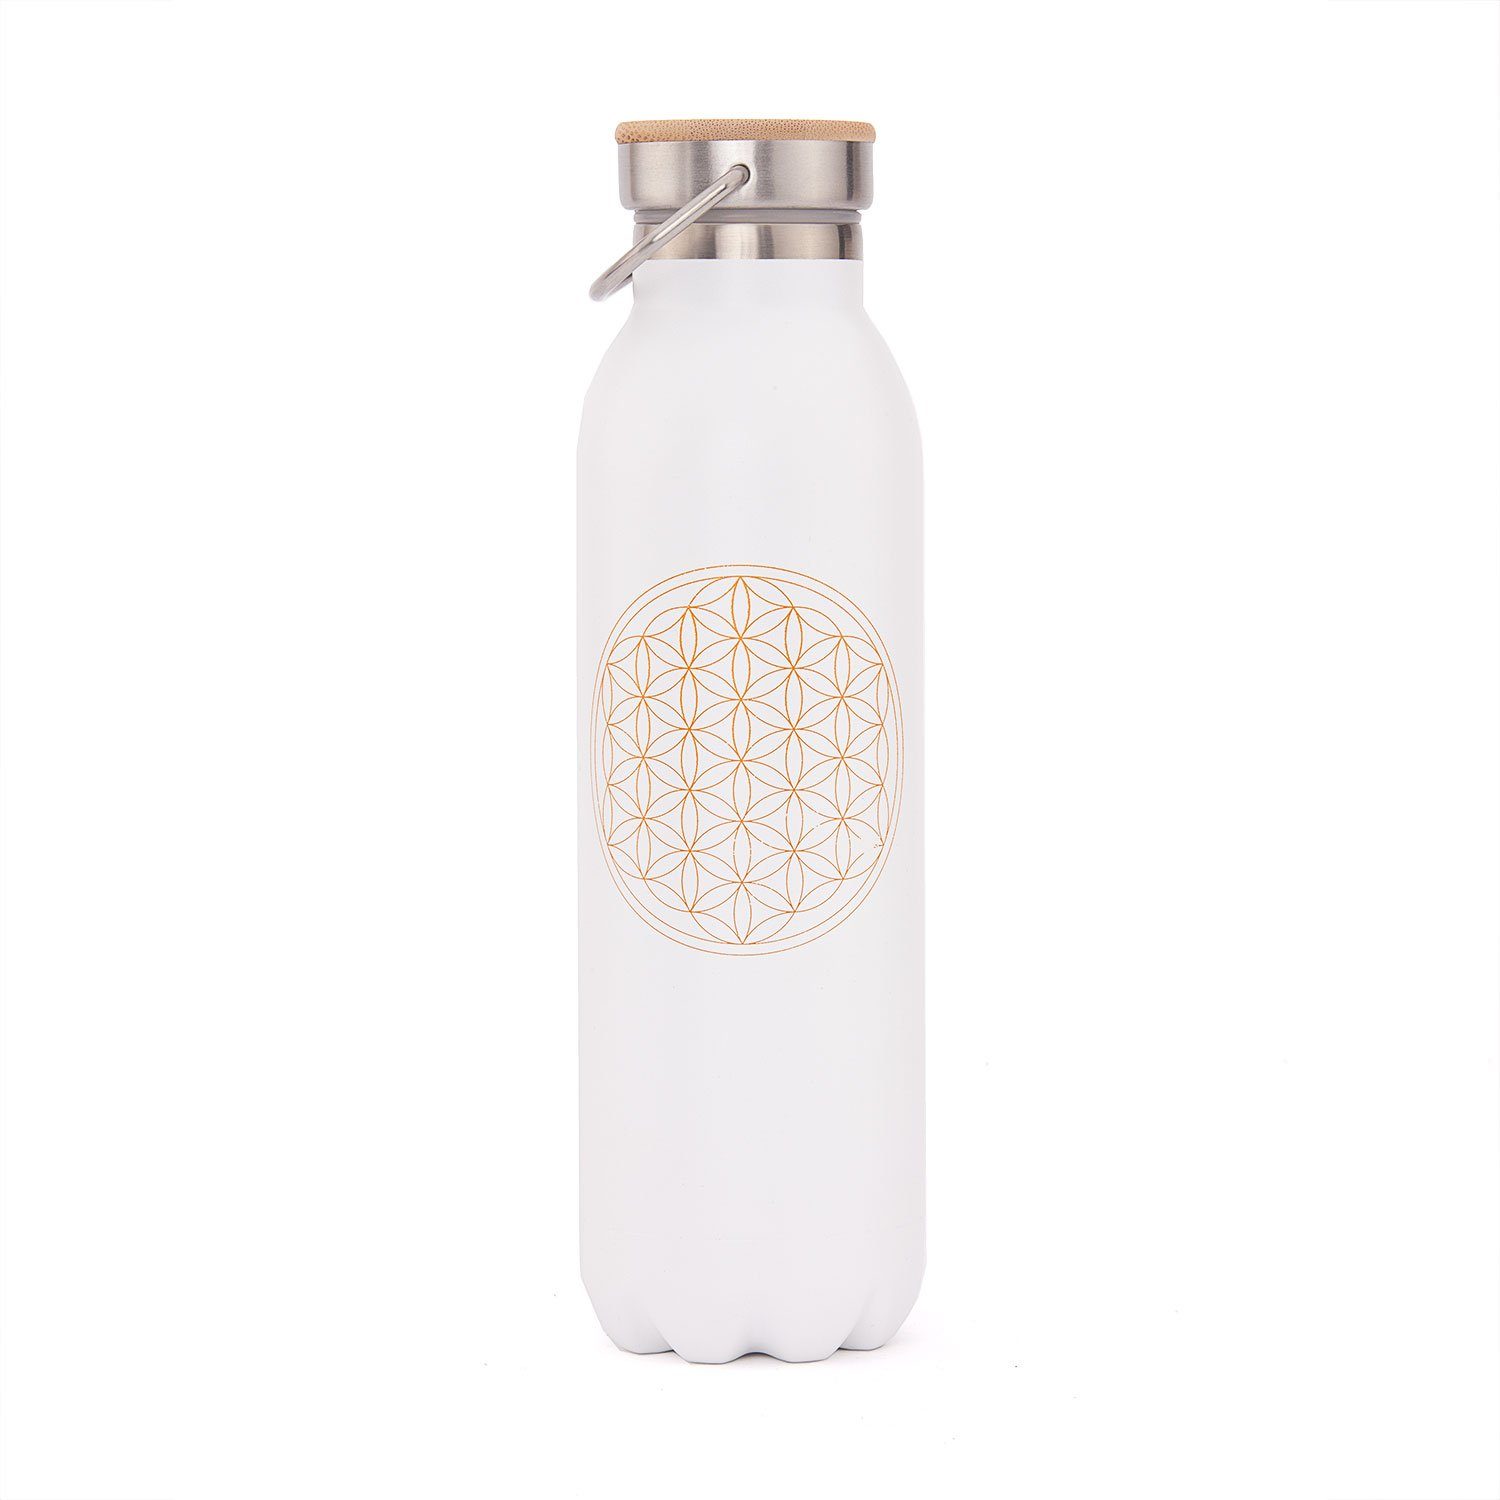 des weiß matt-weiß matt Isolierflasche bodhi Lebens, Edelstahl Isolier-Trinkflasche Blume 600 ml,